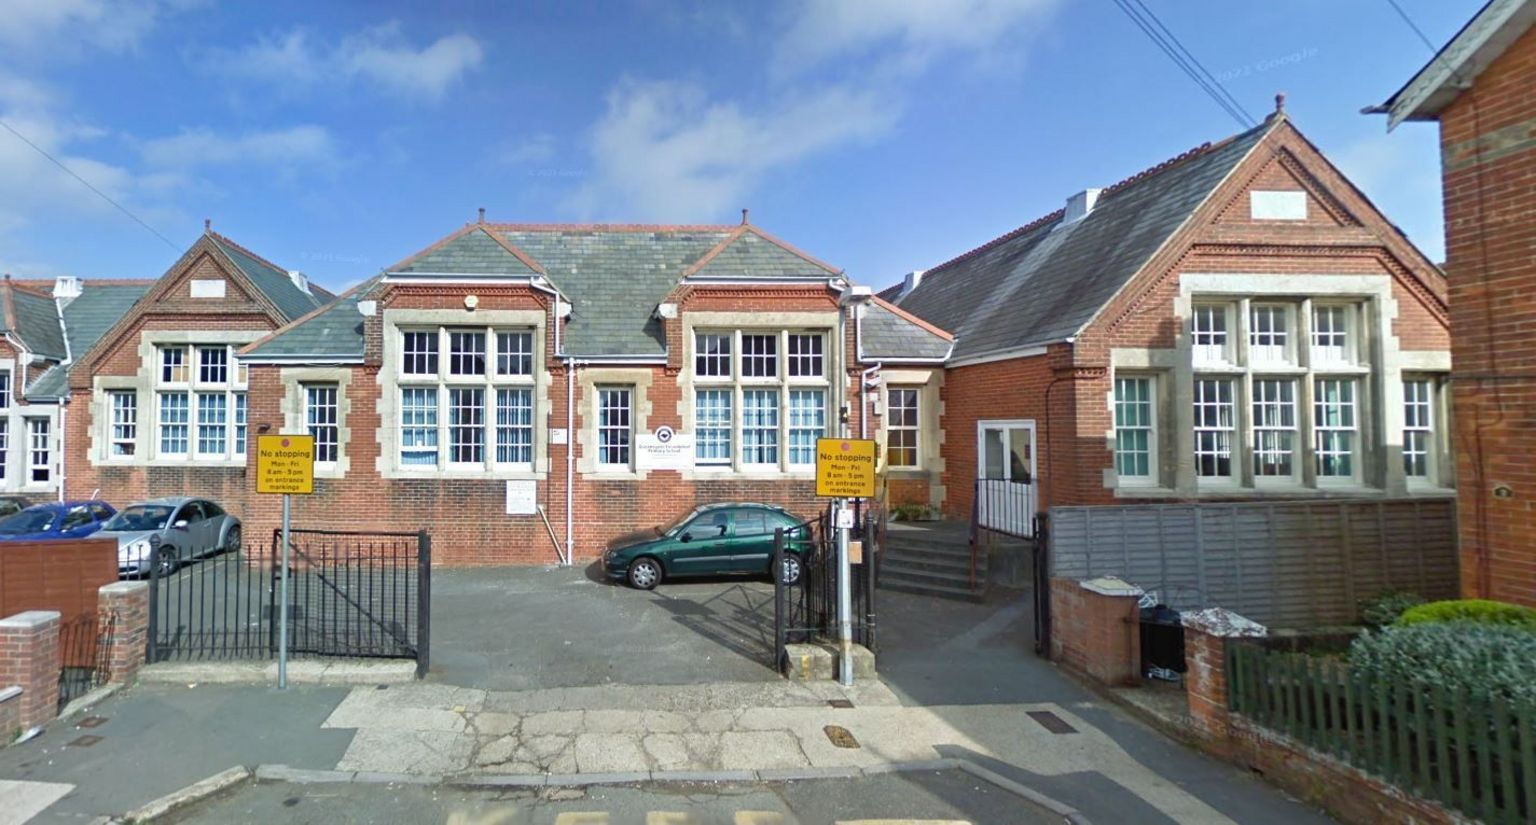 School in Isle of Wight